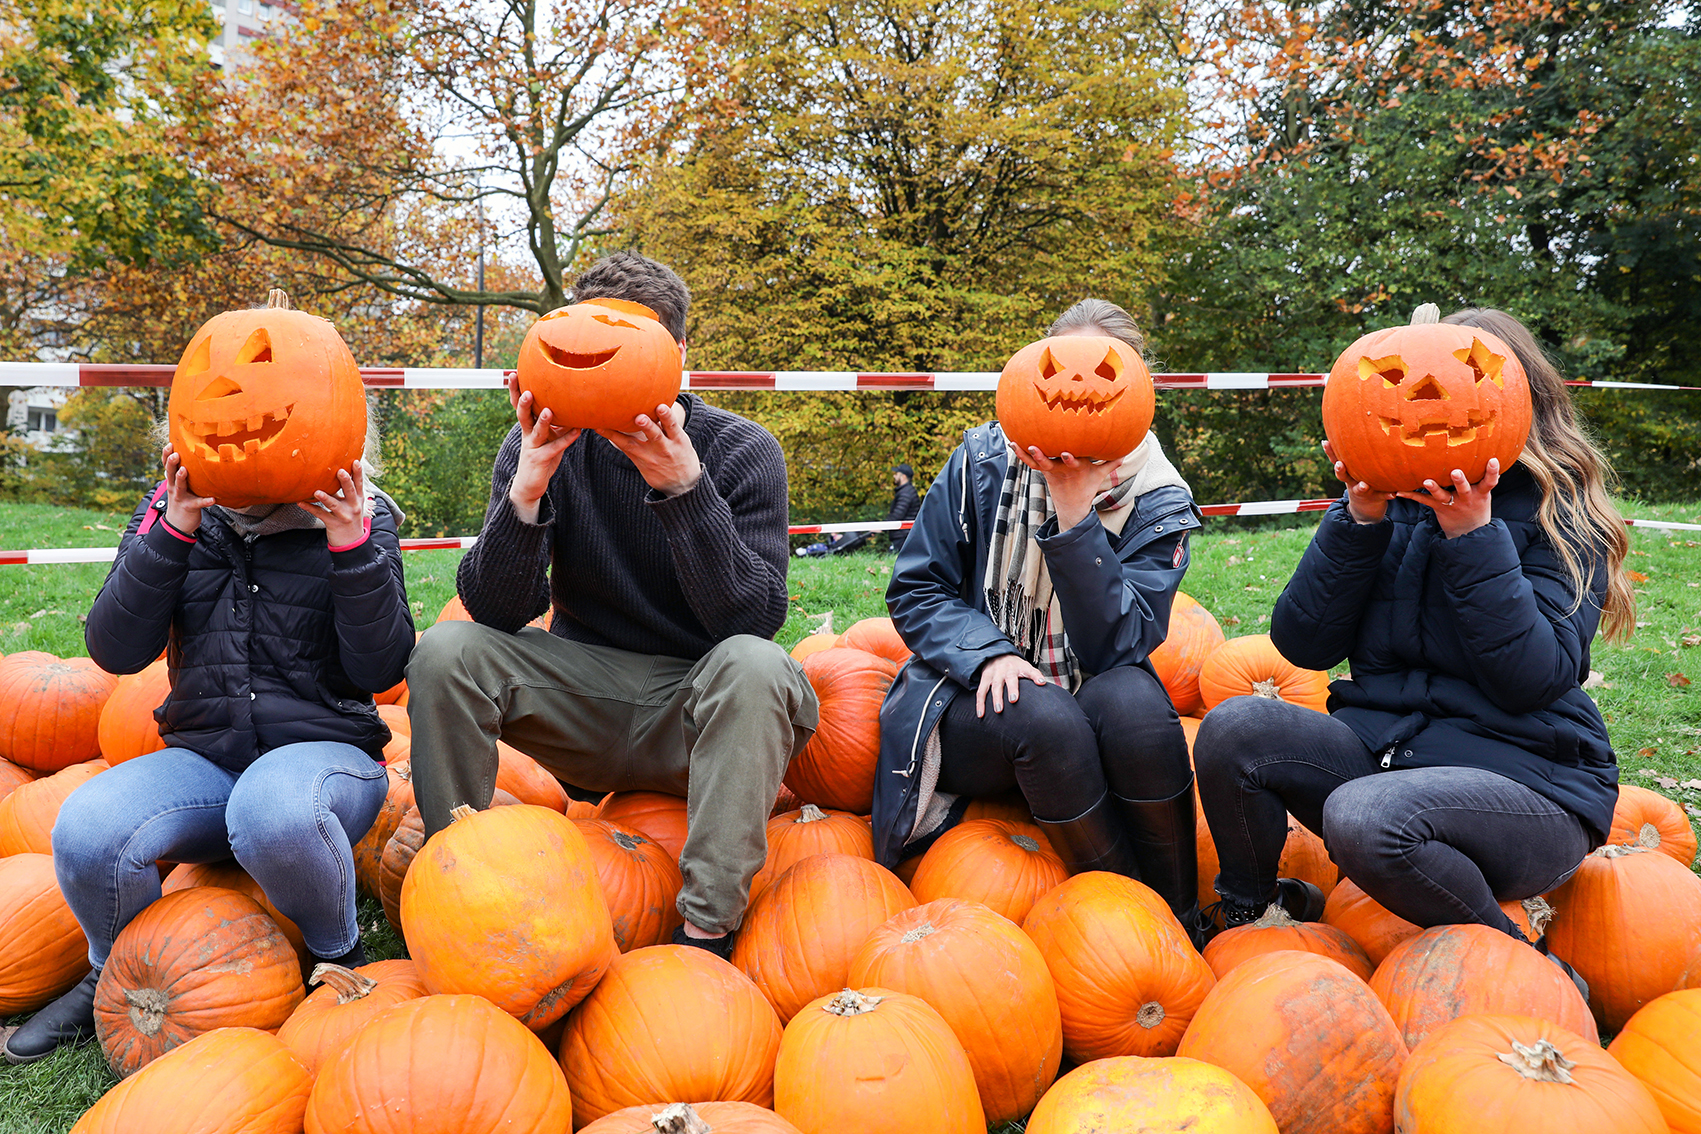 Auf einer grünen Wiese liegt ein großer Haufen orangener Kürbisse. Auf diesen Kürbissen sitzen vier Personen in einer Reihe. Jede Person hält sich einen geschnitzten Halloween-Kürbis vor das Gesicht. Alle Kürbisse lachen freundlich.